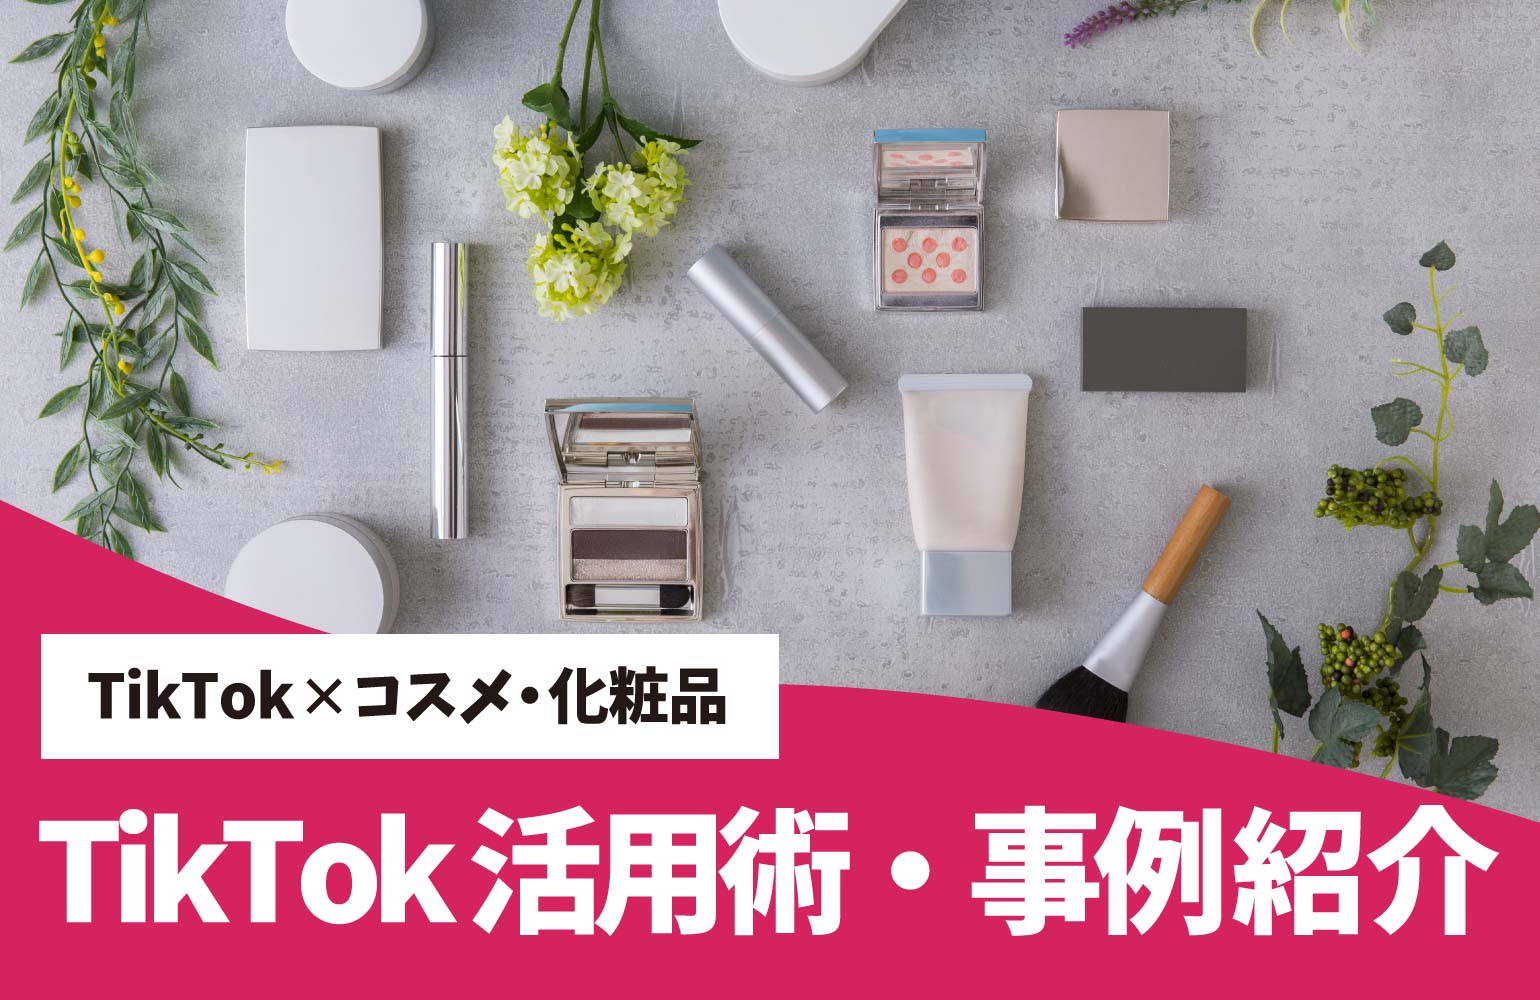 コスメ/美容商材企業向け　TikTok の活用術や事例をご紹介